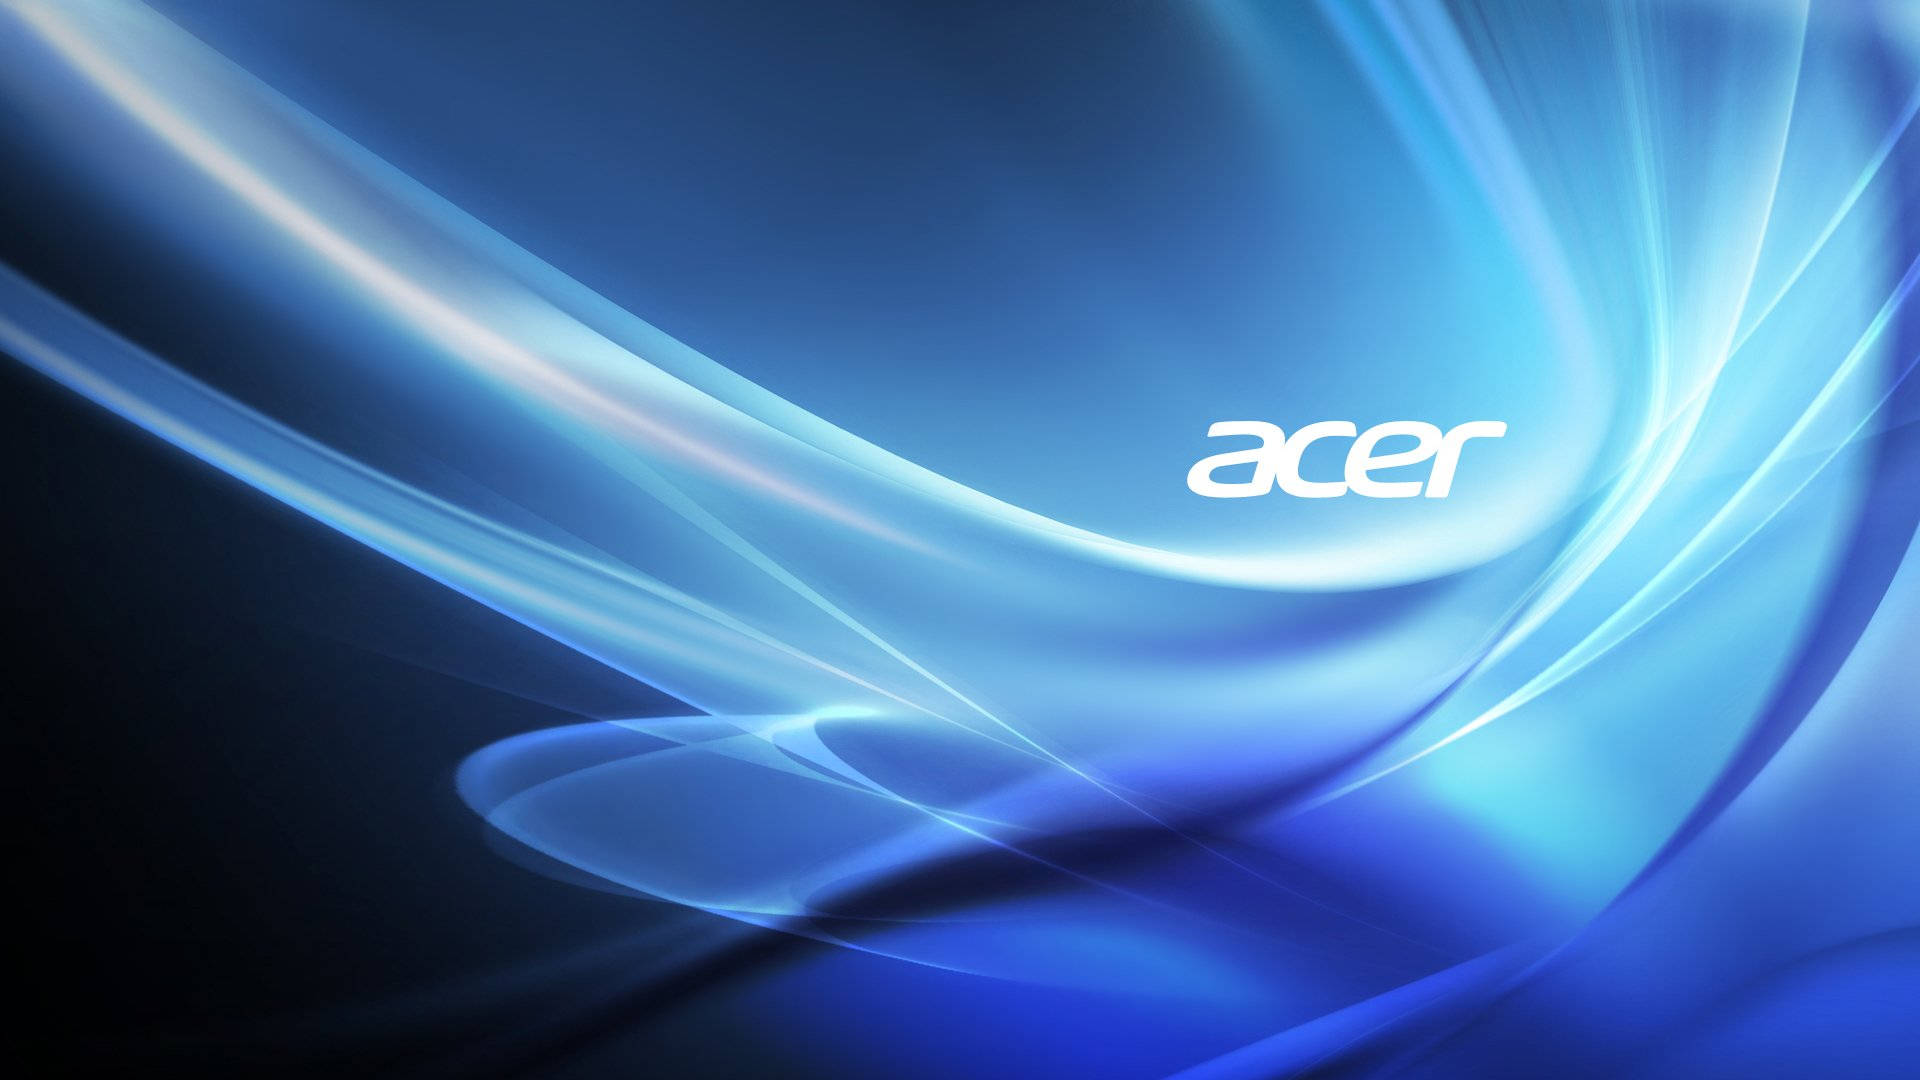 Acer Blue Aesthetic Themed Logo Wallpaper